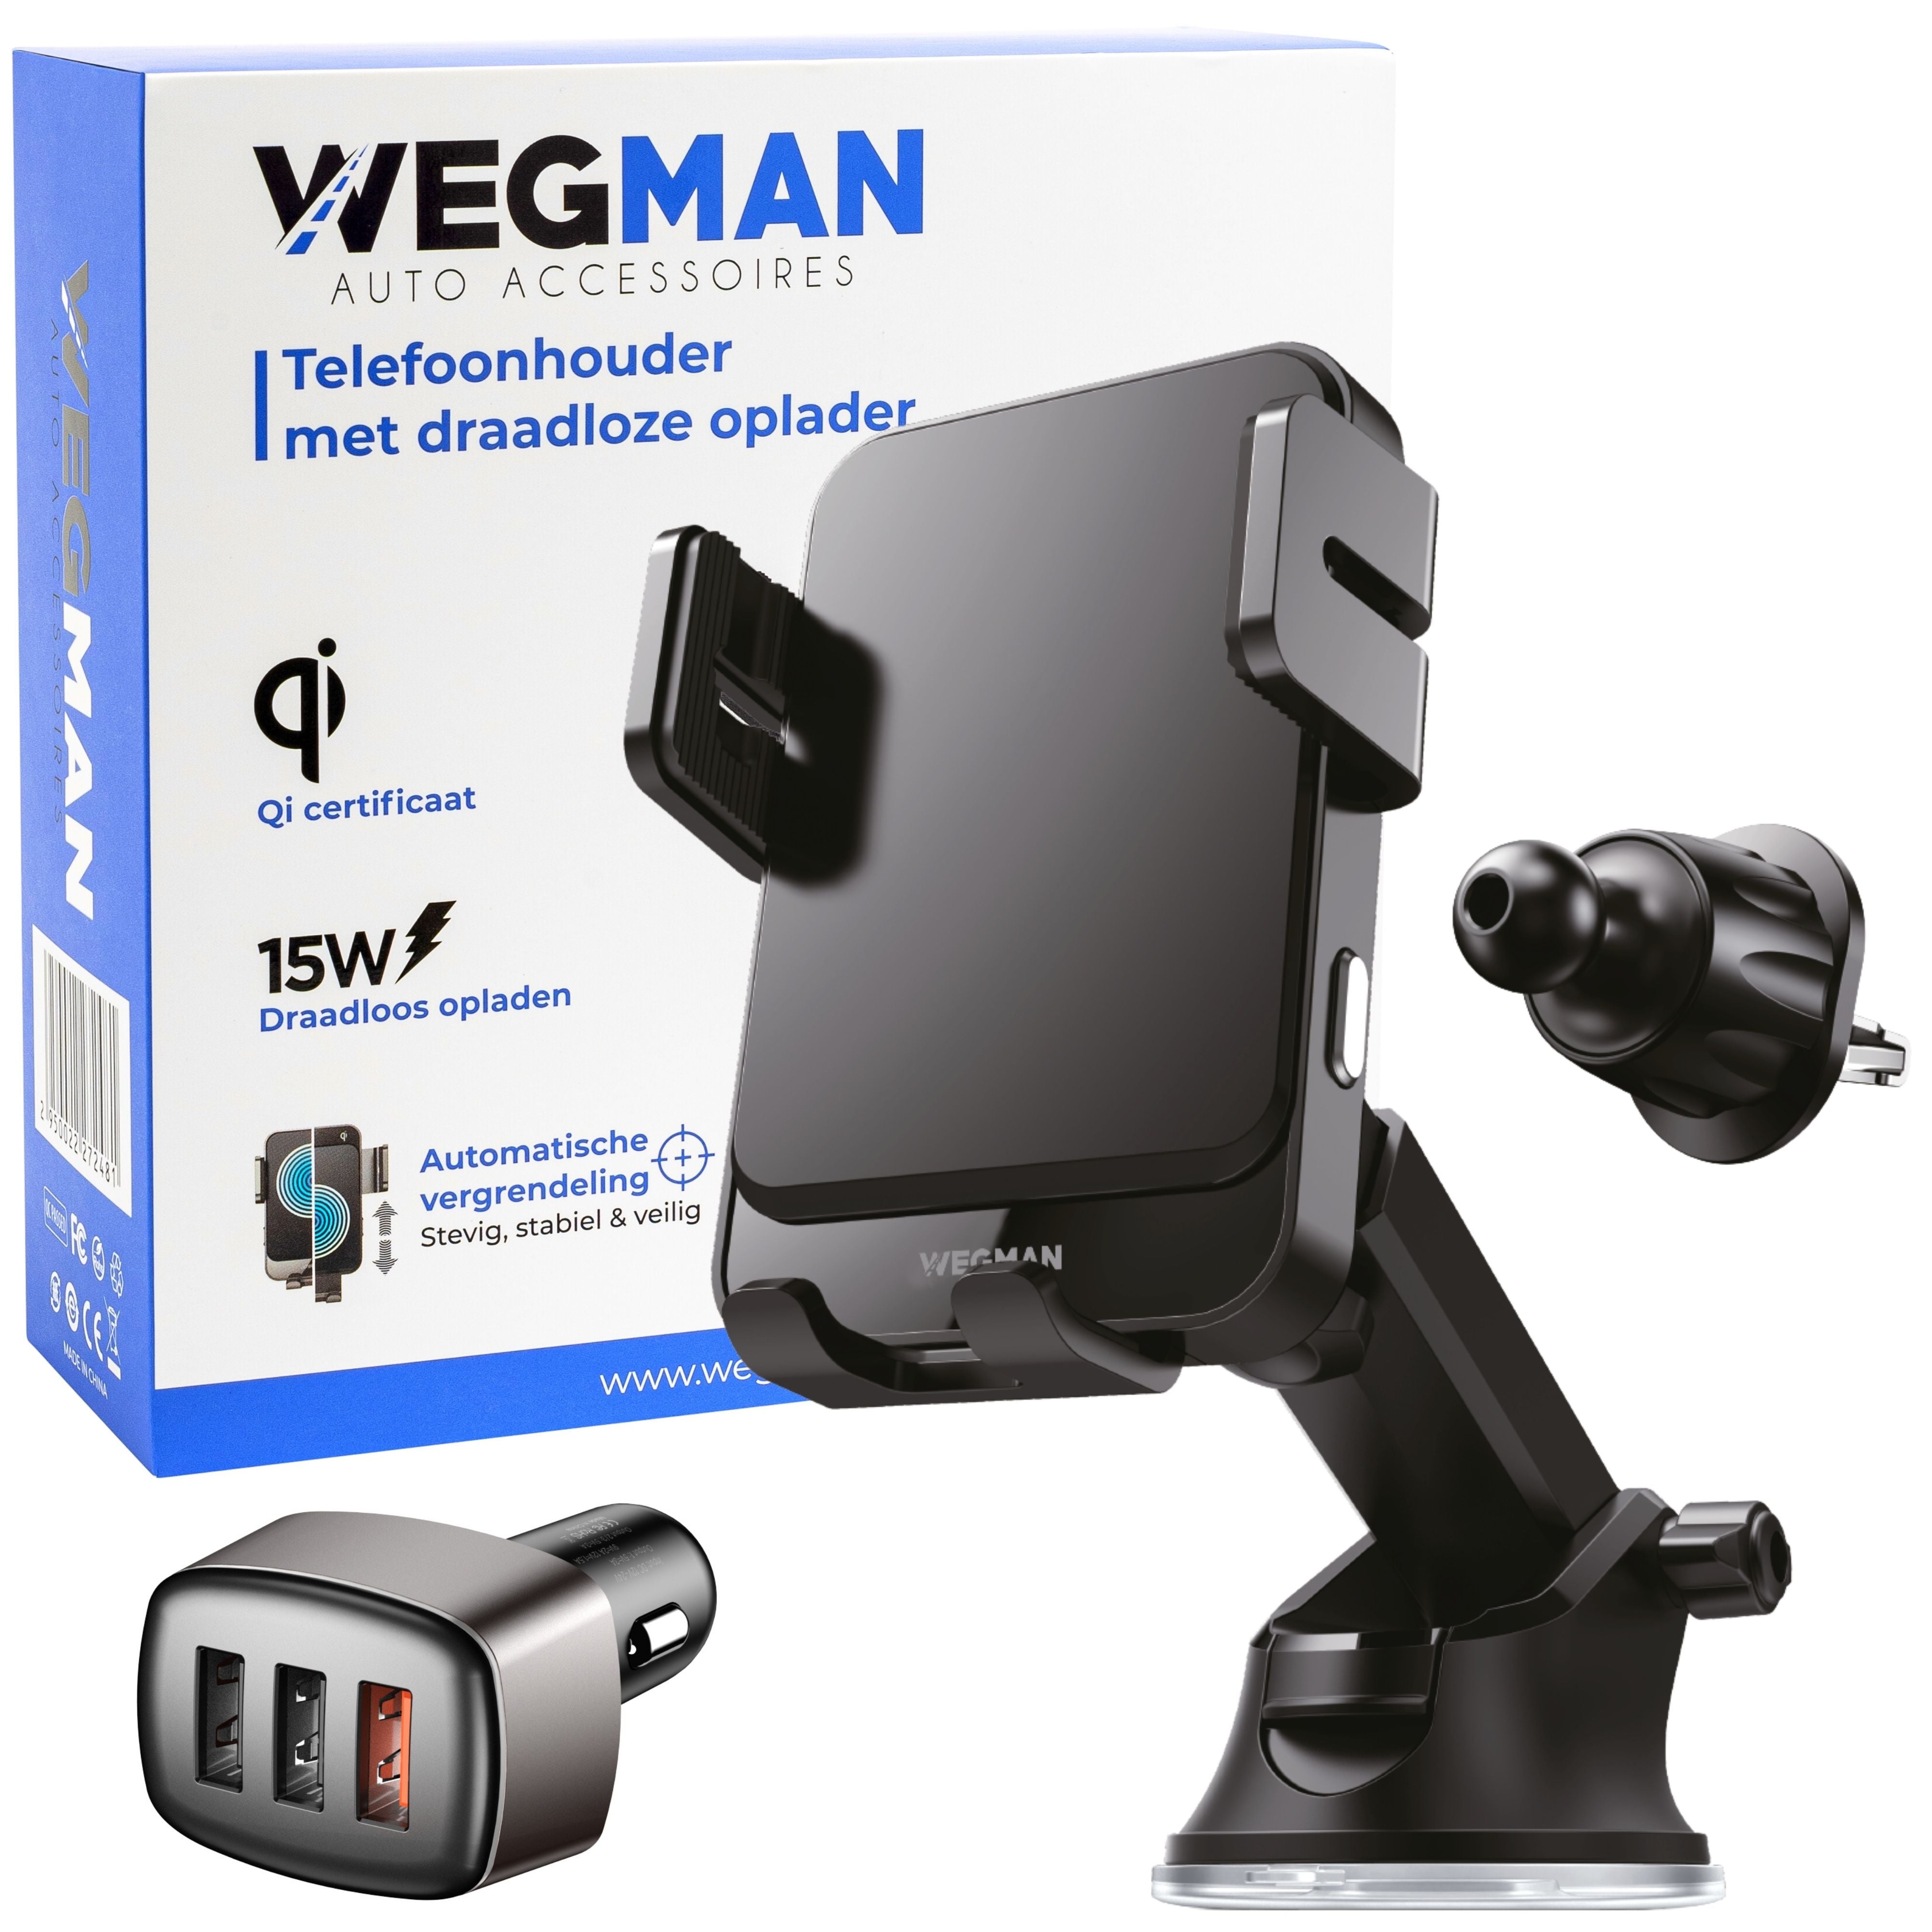 Wegman-telefoonhouder-met-draadloze-oplader